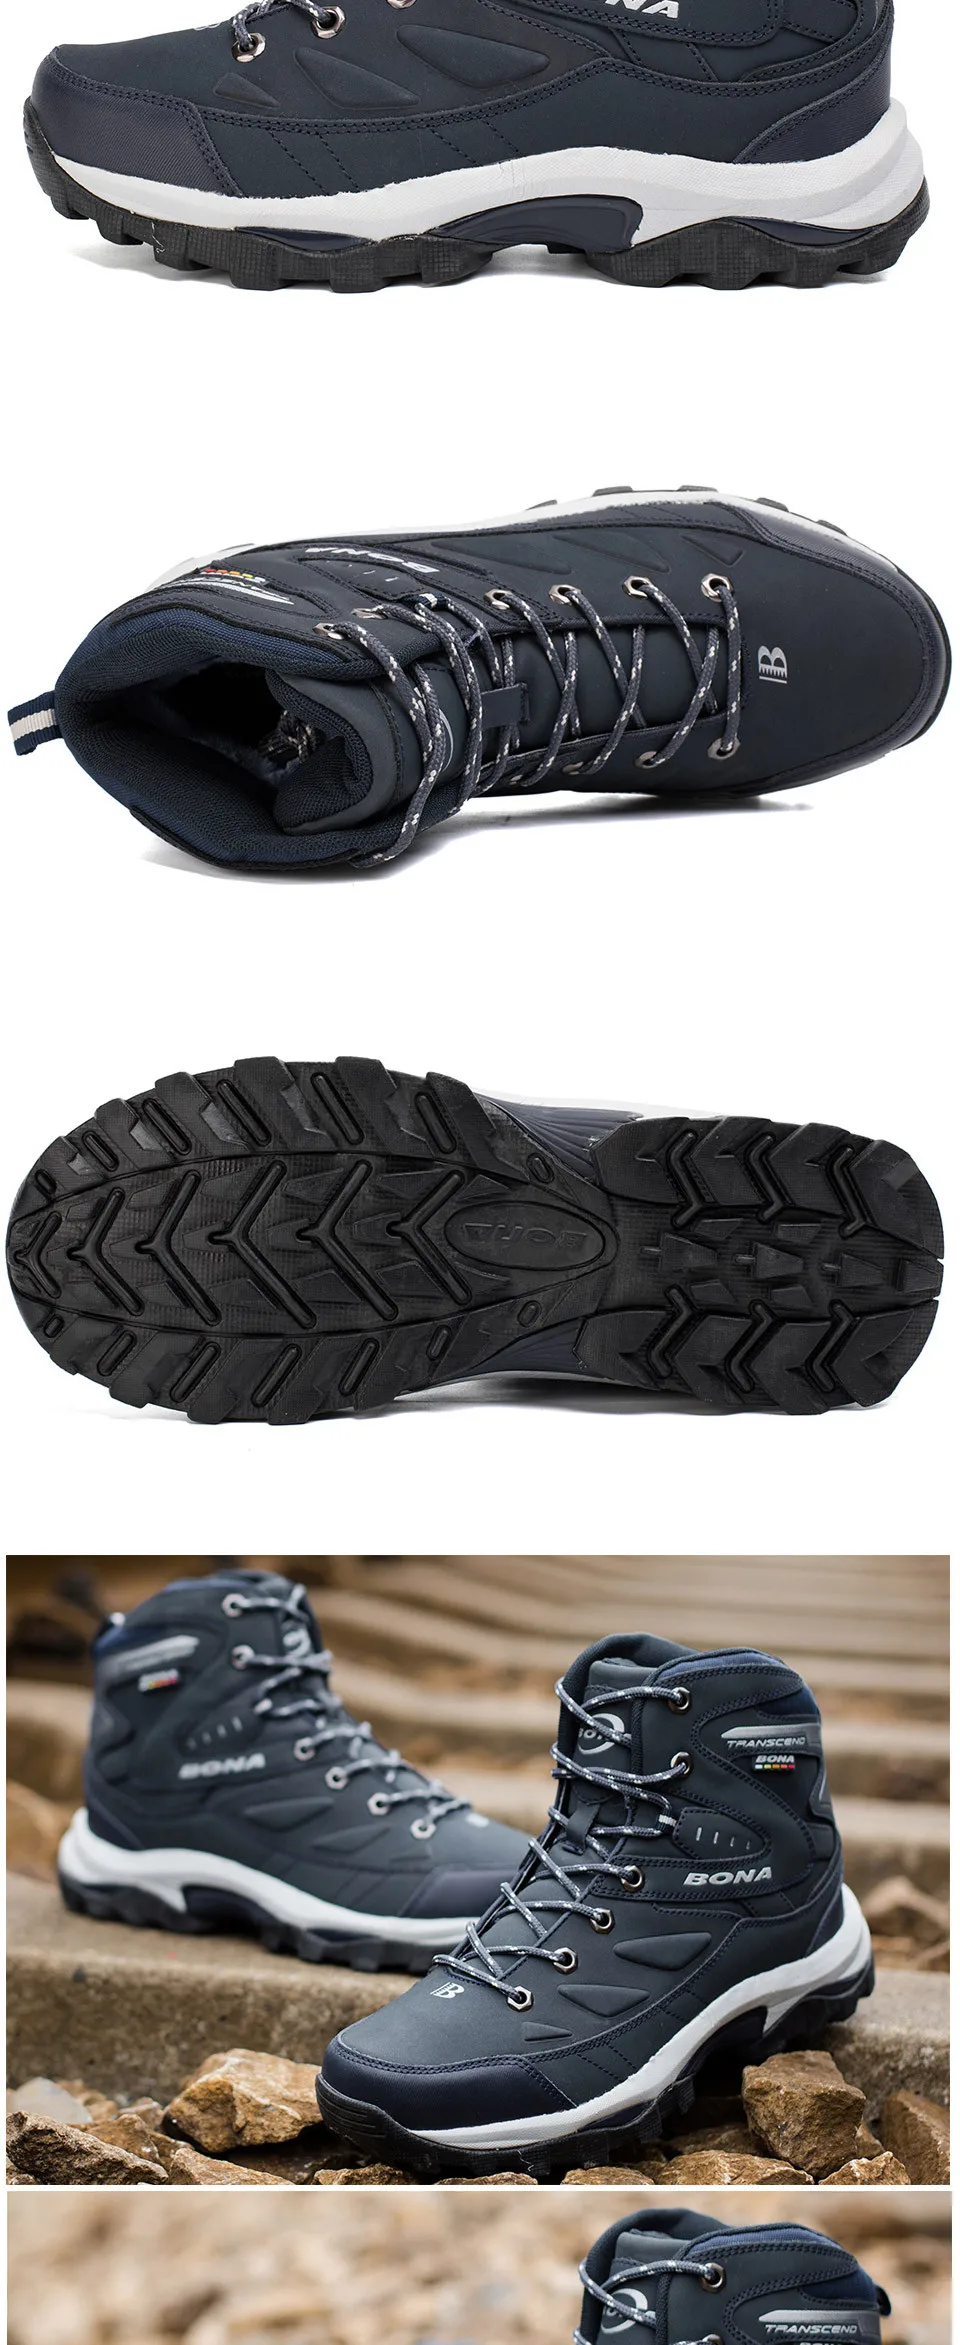 BONA/новый популярный стиль, мужская обувь для походов, зимняя прогулочная обувь для бега, обувь для горного спорта, кроссовки для альпинизма